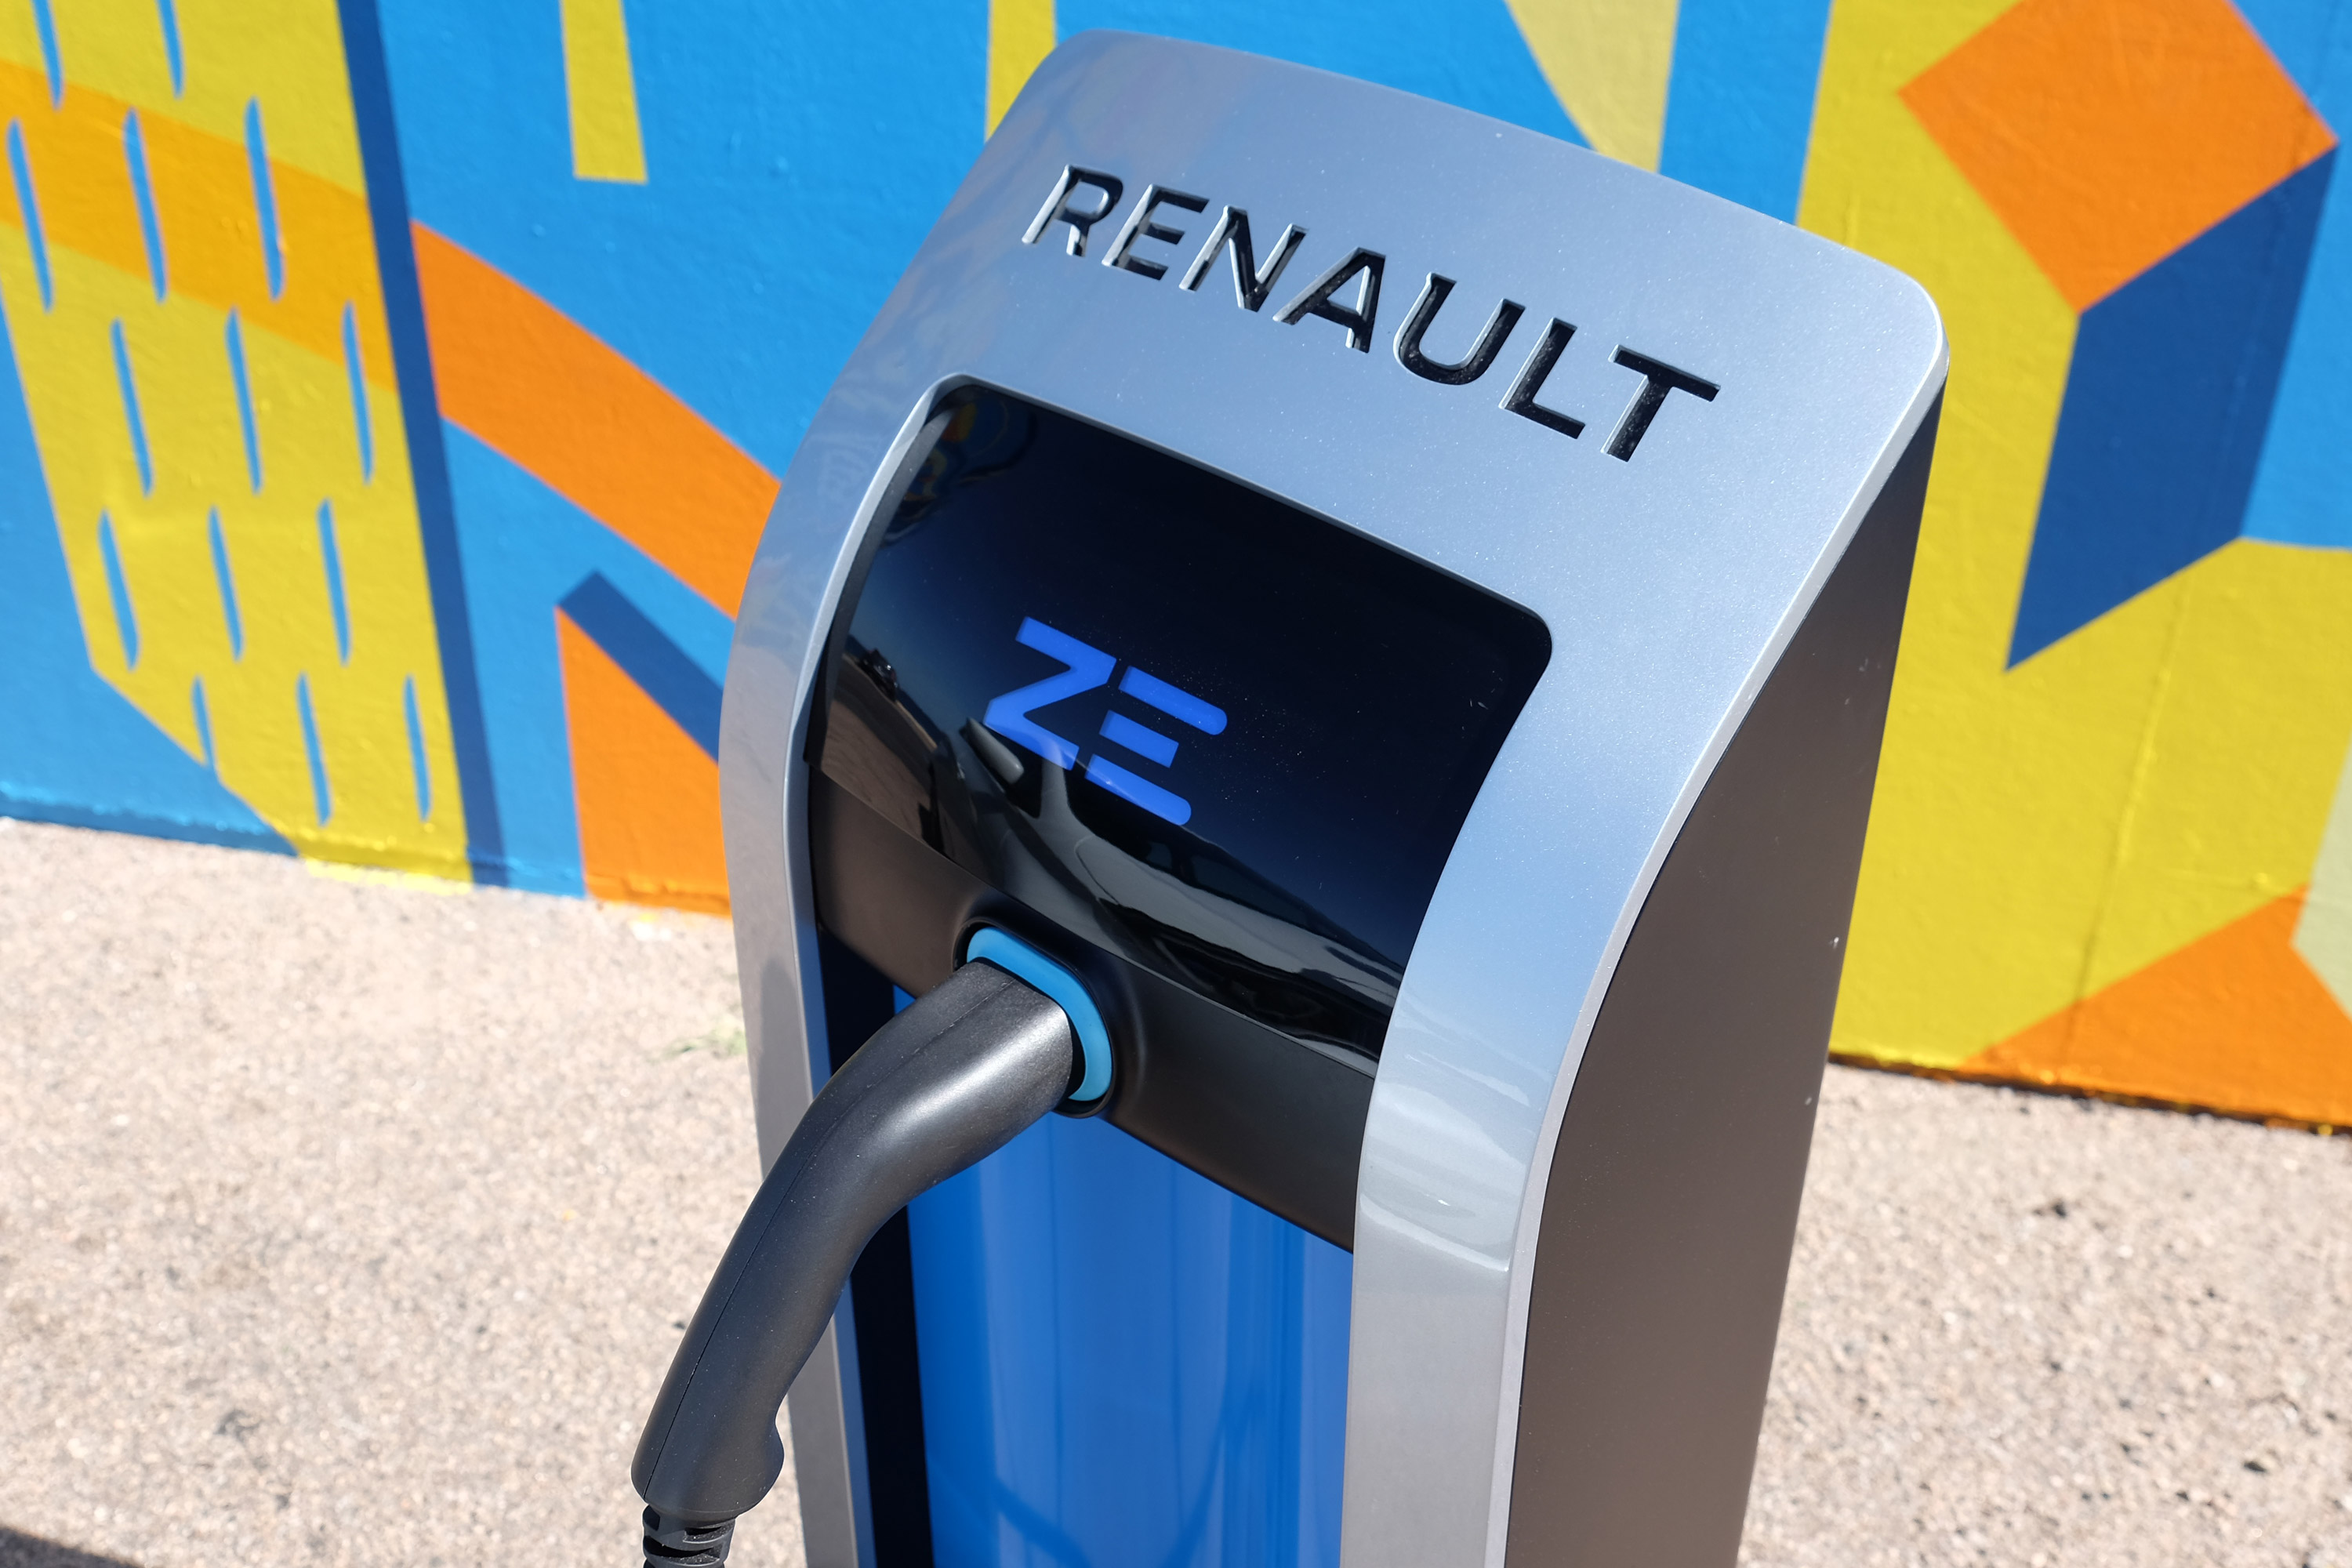 Szebb, erősebb és messzebb is megy Európa kedvenc villanyautója – Renault Zoé teszt 2019 18